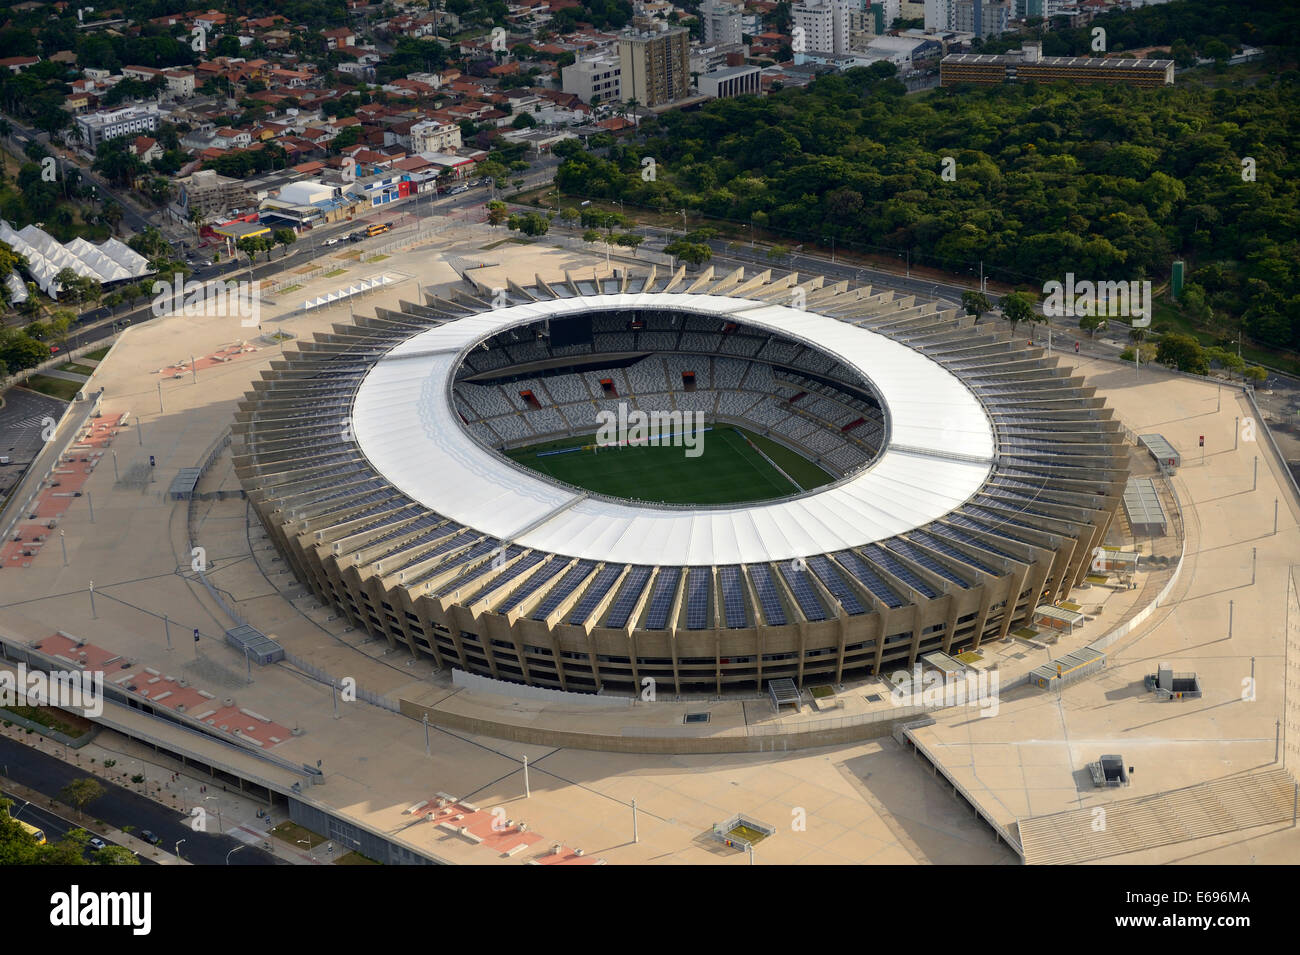 Aerial view, venue for the FIFA World Cup 2014, Estadio Governador Magalhaes Pinto or Mineirão Stadium, Belo Horizonte Stock Photo